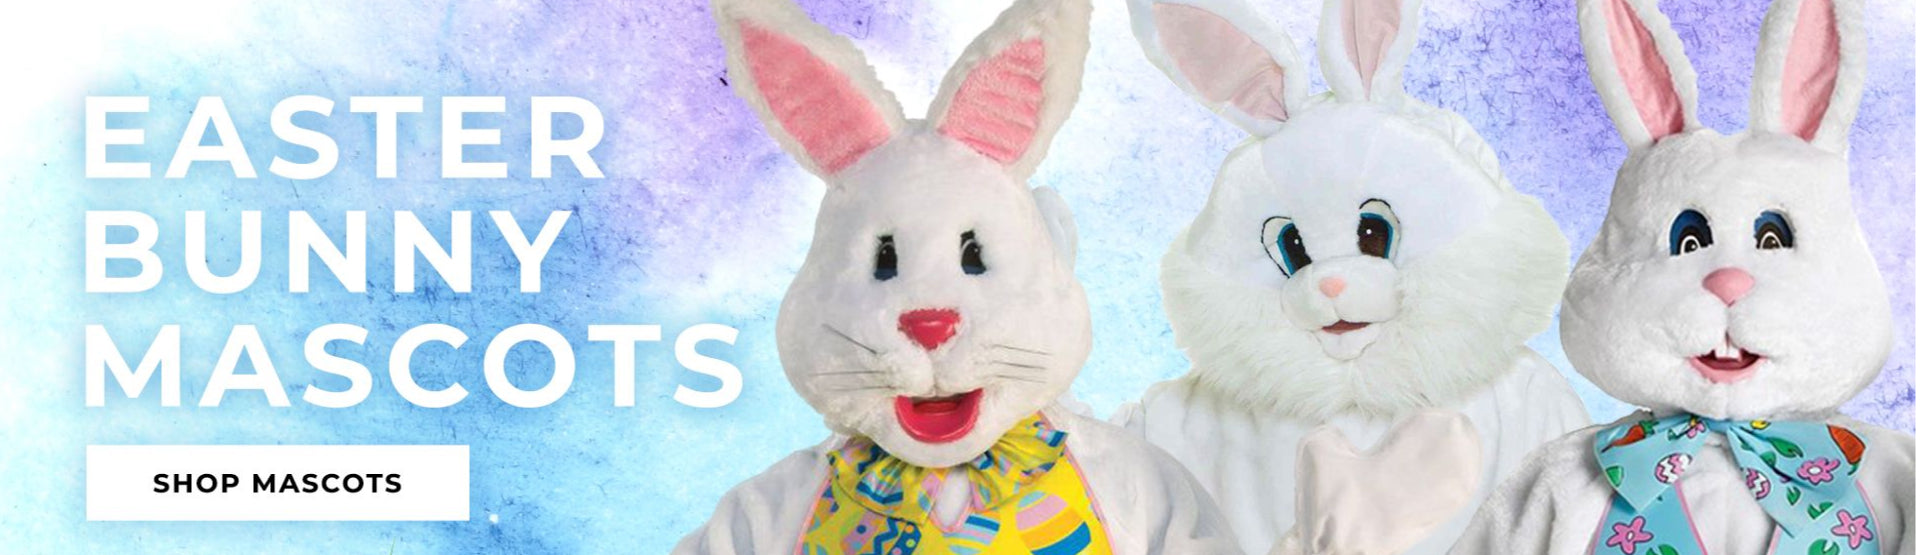 Shop Easter Bunny Mascots at Costumes.com